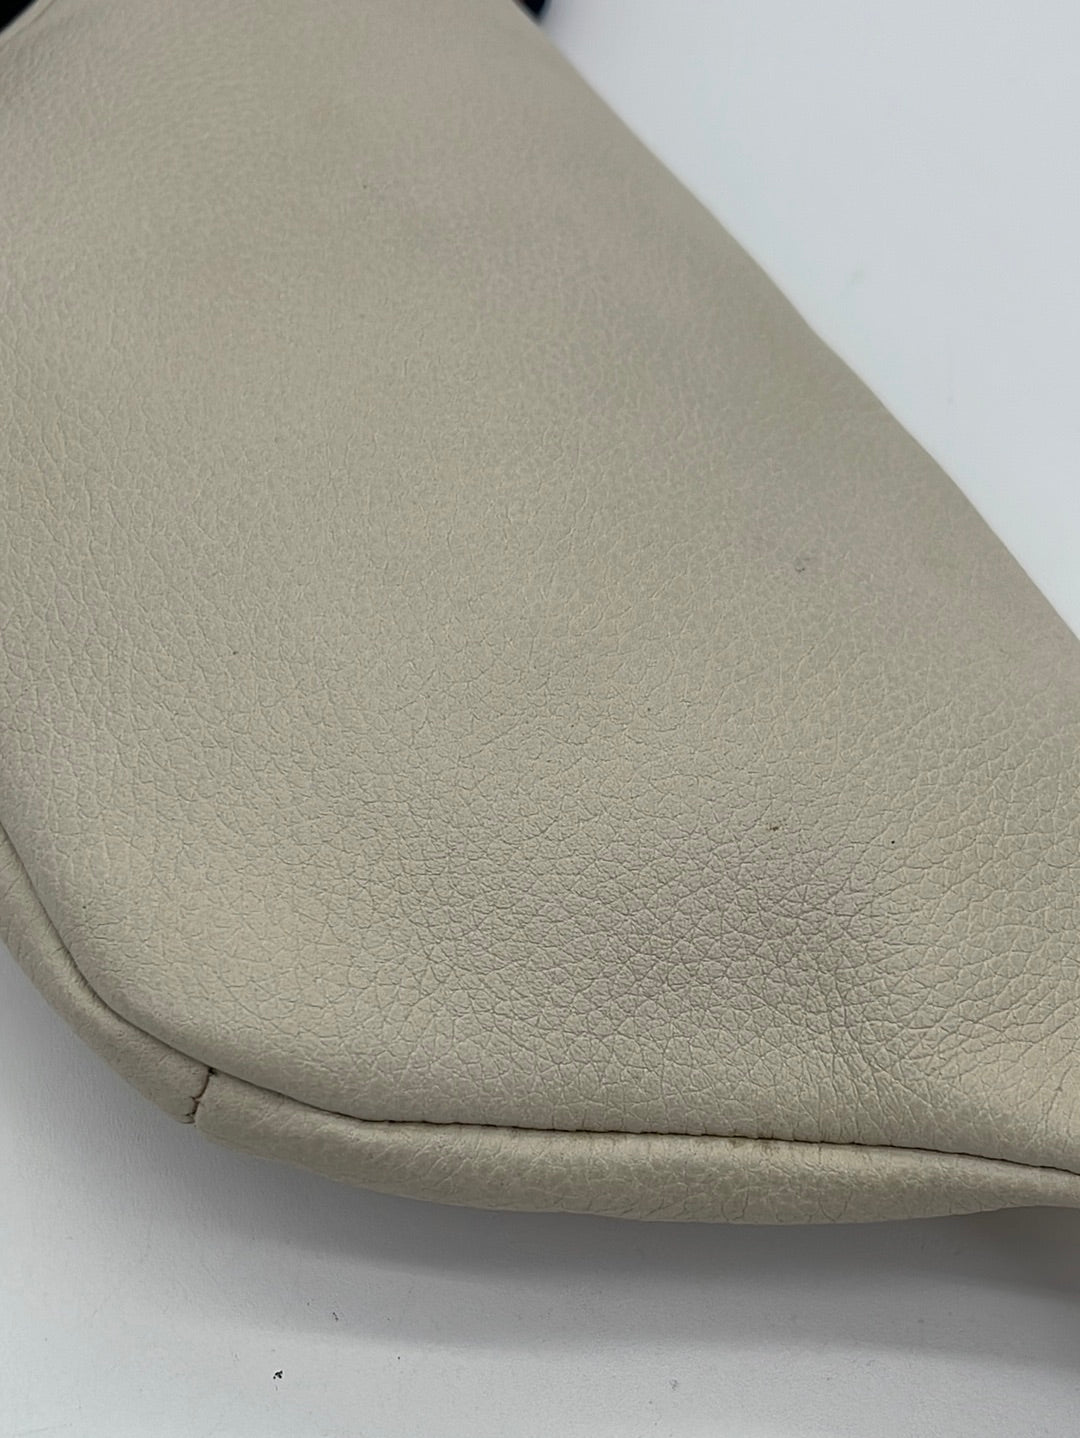 Preloved Gucci White Pebbled Leather Logo Belt Bag 527792204991 061423